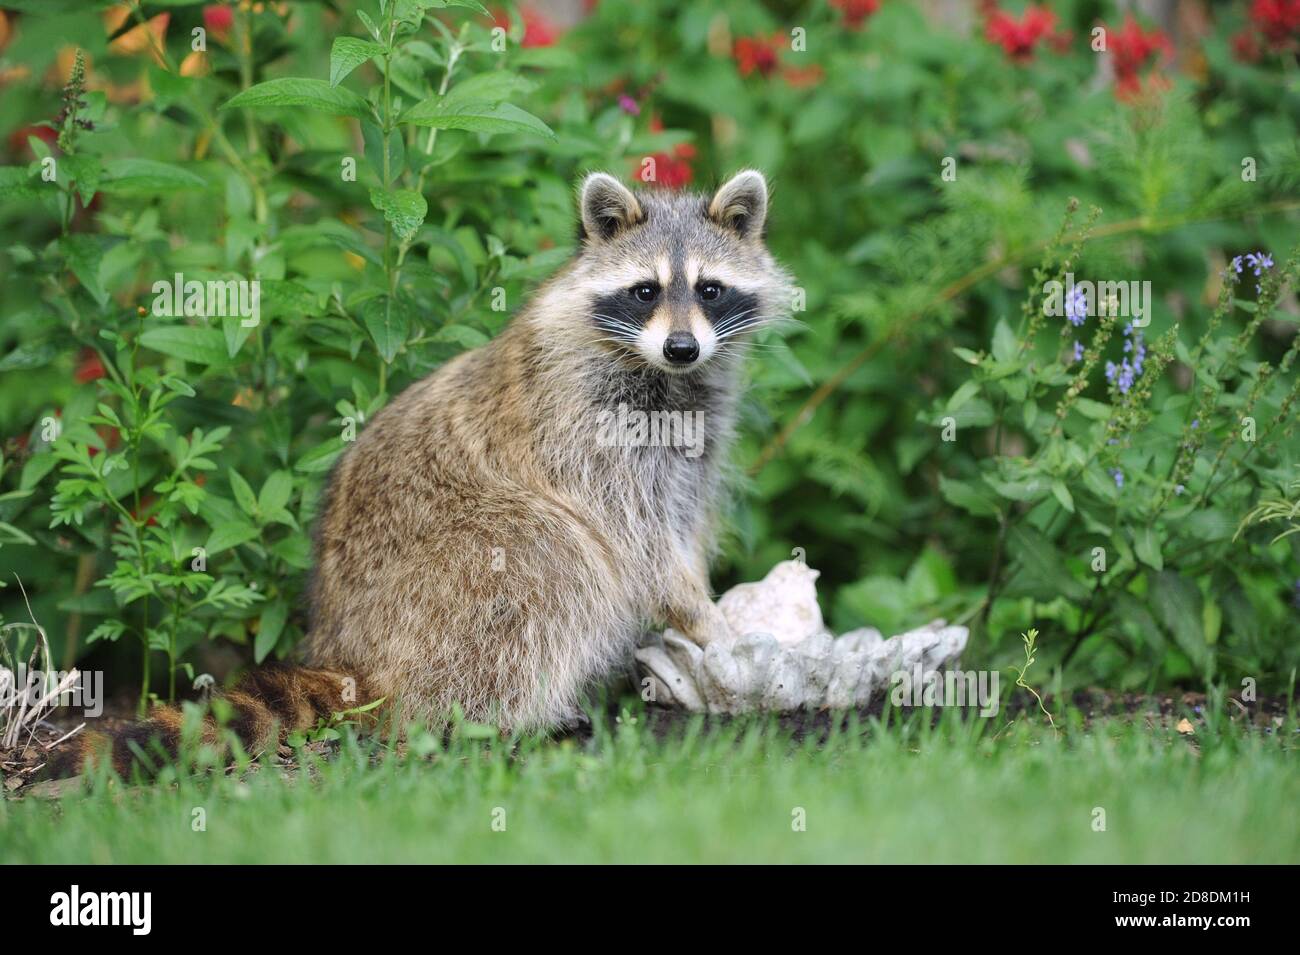 Un raton laveur assis et regardant dans un jardin Banque D'Images